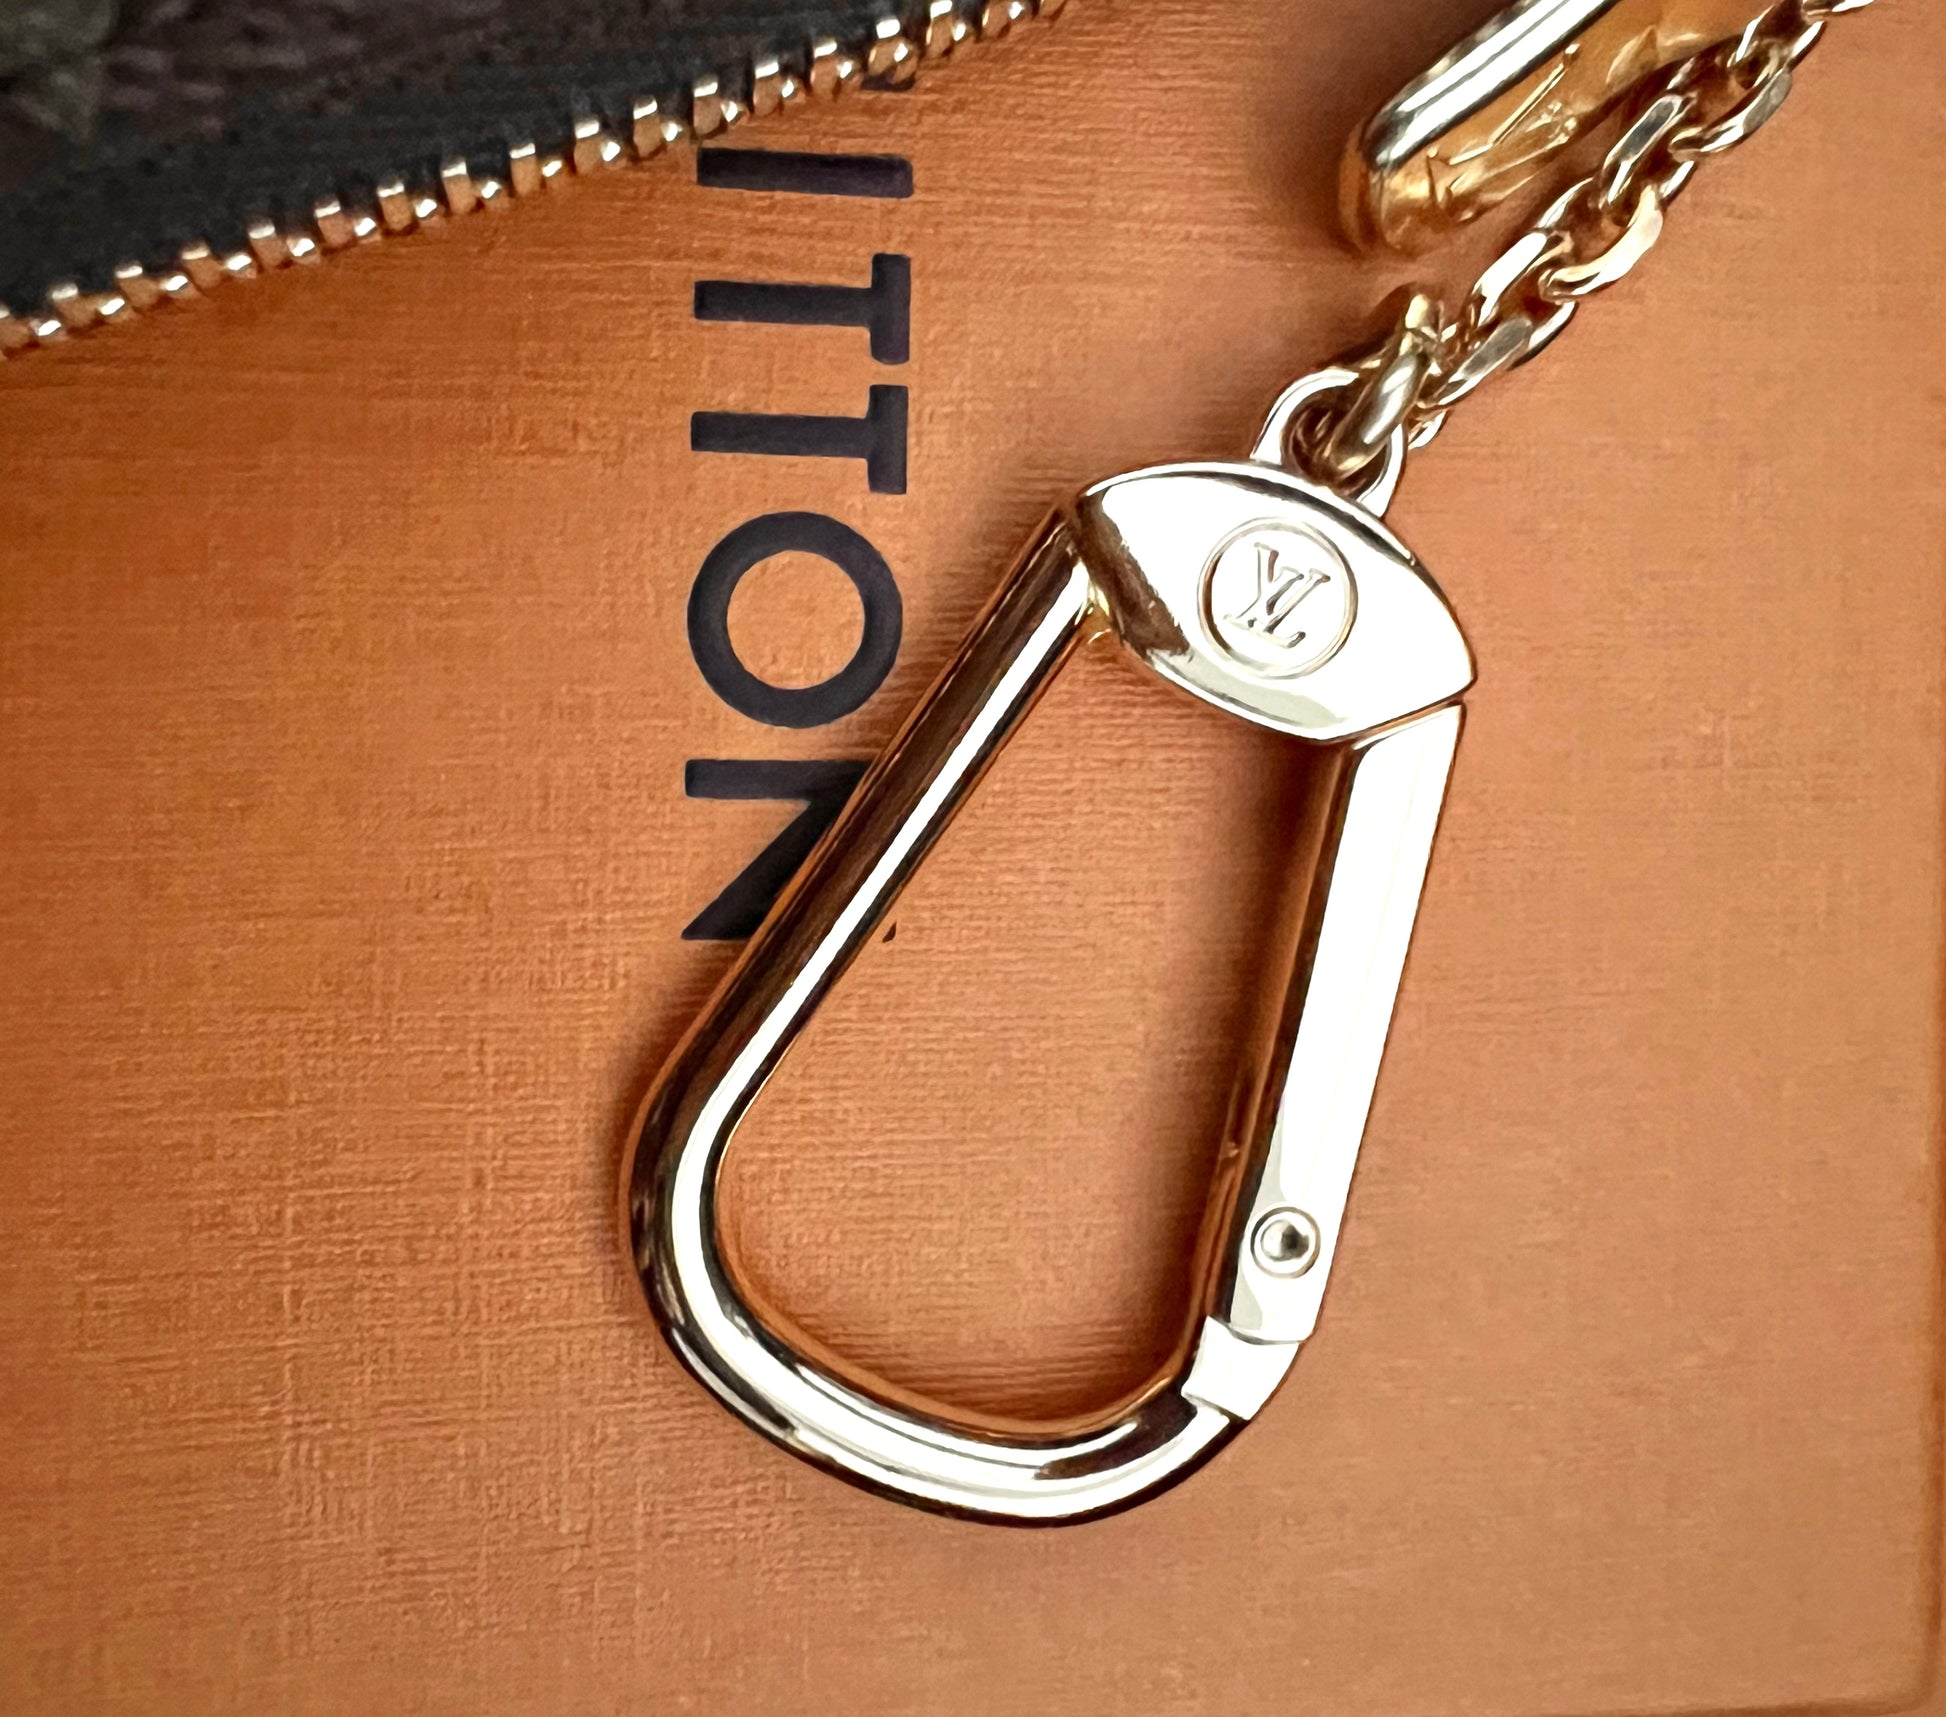 Louis Vuitton, Accessories, Louis Vuitton 222 Vivienne Holiday Animation  Key Pouch Cles Paris